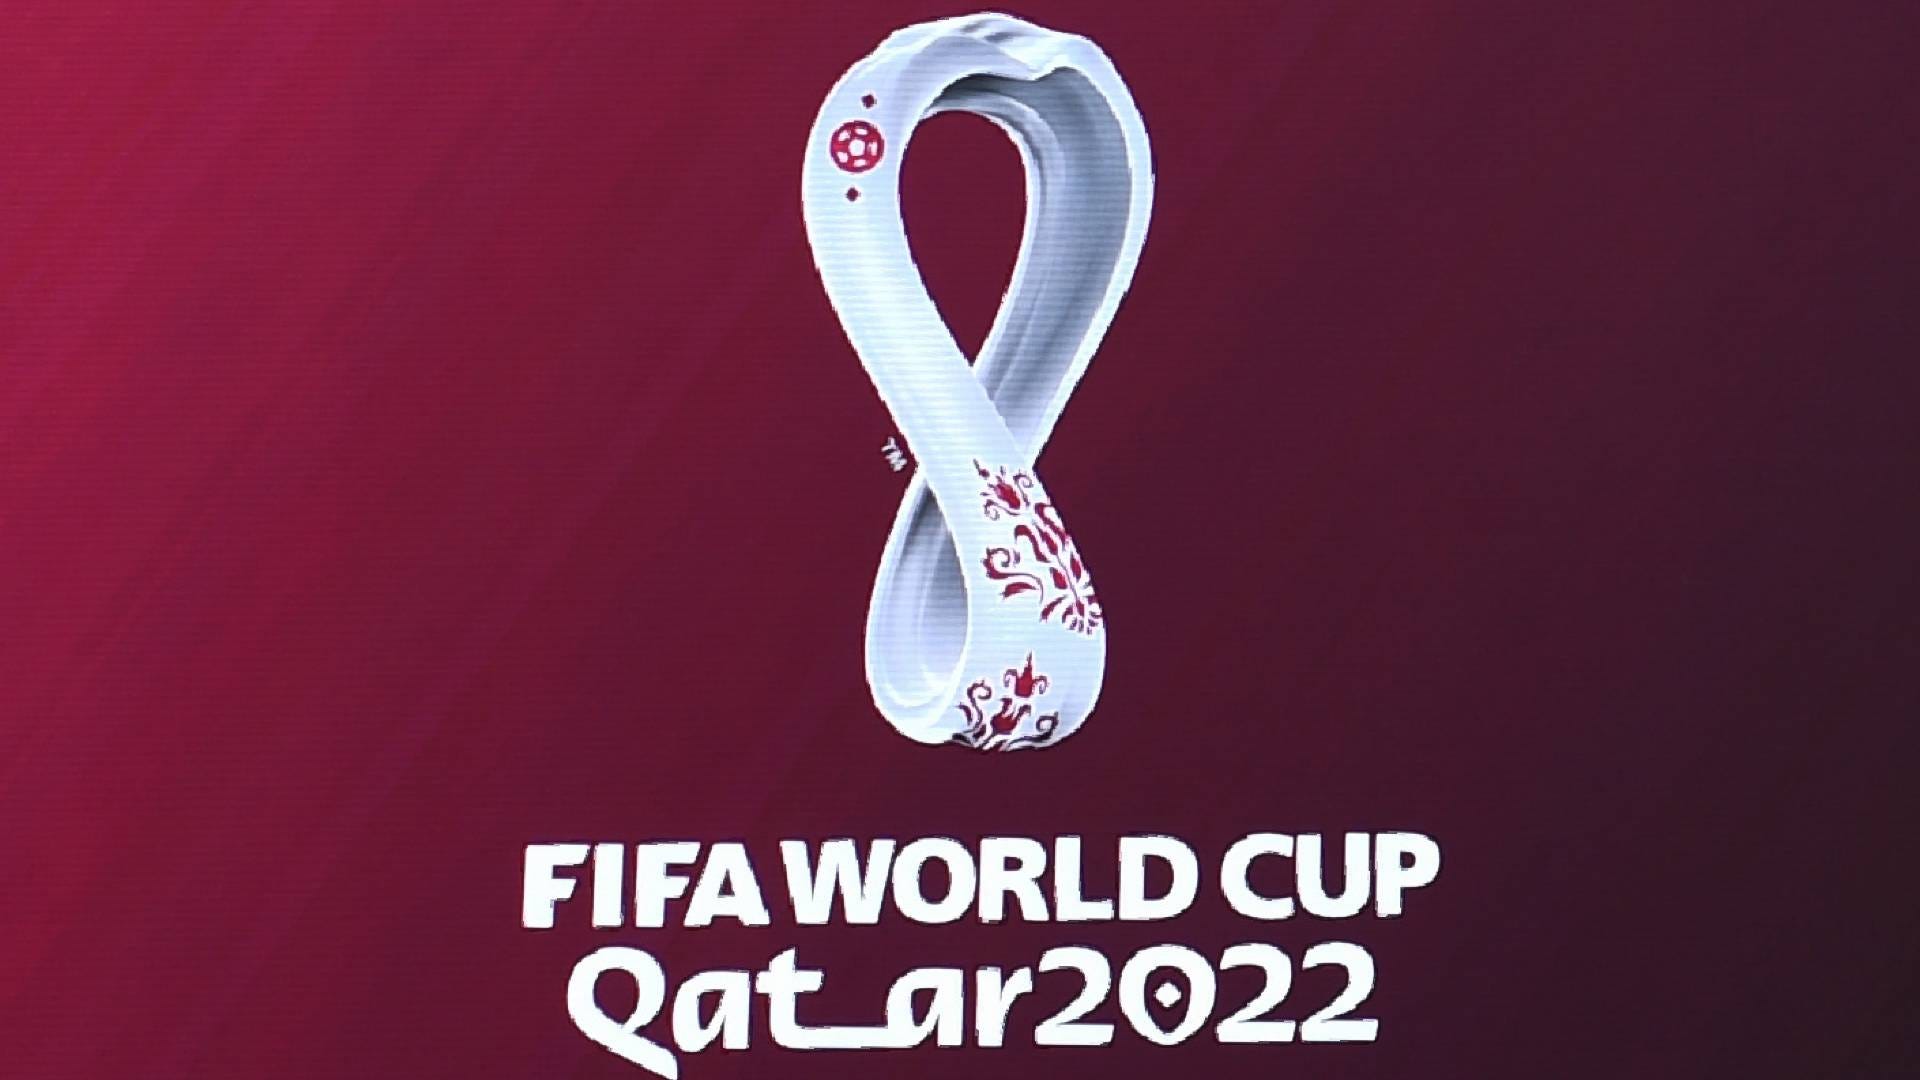 FIFA WM World Cup 2022 Katar Logo